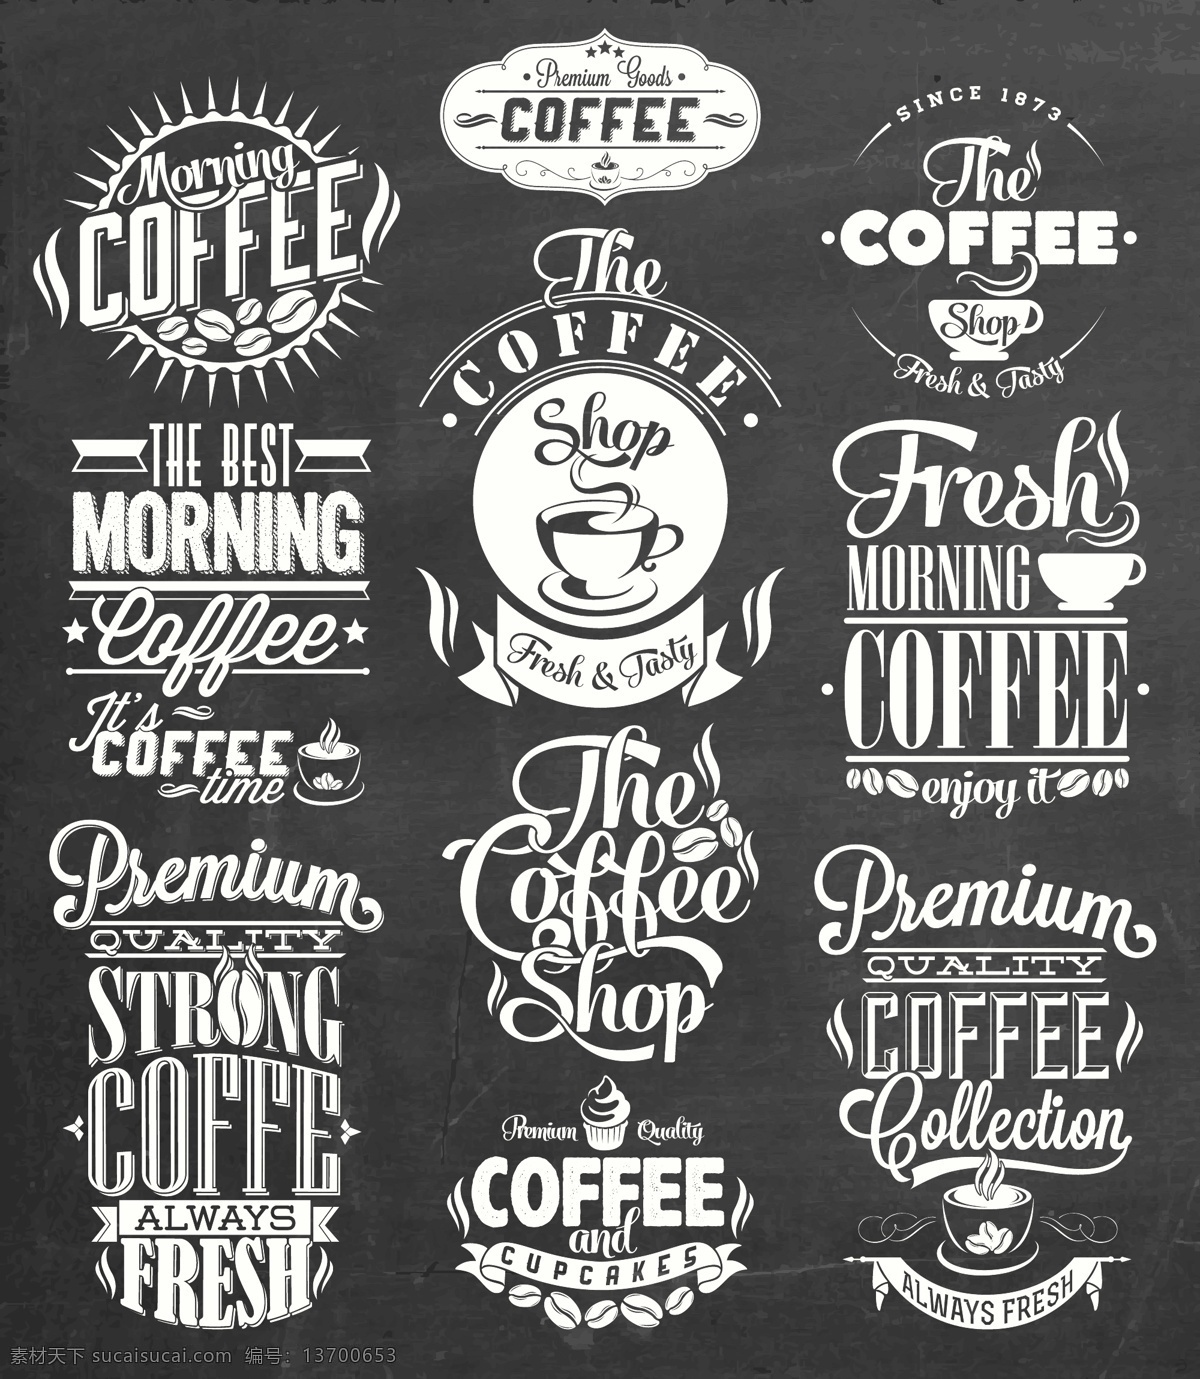 咖啡 图标 咖啡设计 咖啡图标 咖啡标志 咖啡豆 咖啡店 咖啡元素 咖啡店图标 logo coffee 咖啡商标 标志 vi icon 小图标 图标设计 logo设计 标志设计 标识设计 矢量设计 餐饮美食 生活百科 矢量